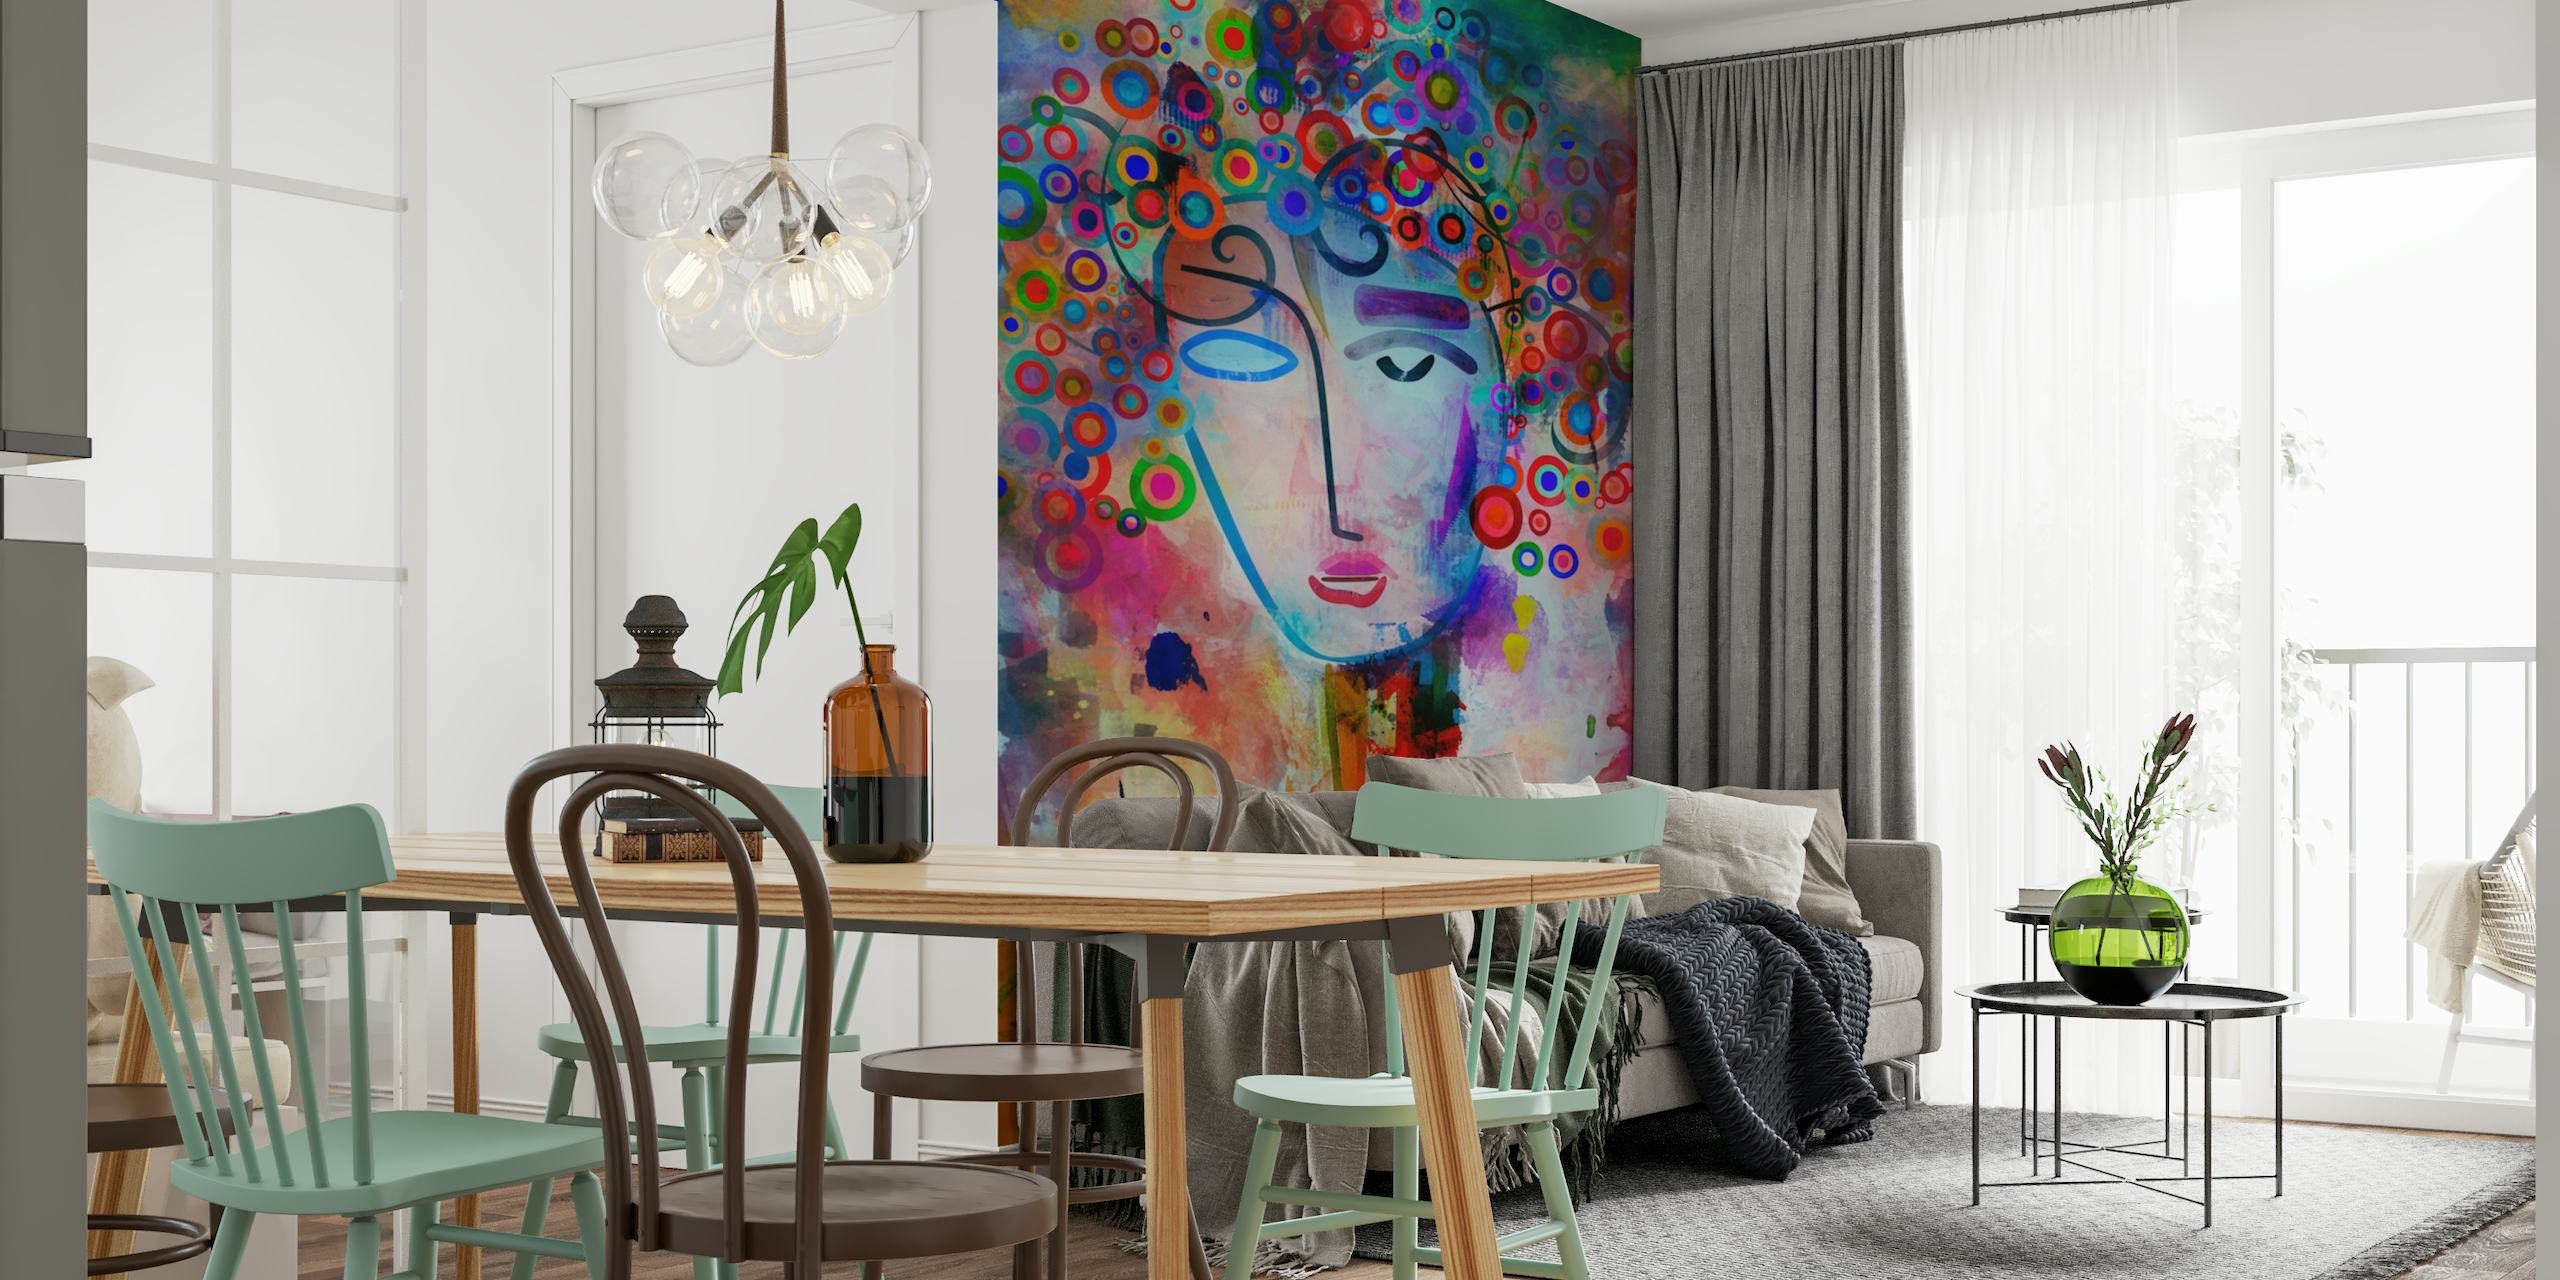 Abstraktní barevná nástěnná malba s nápaditou reprezentací mysli v brainstormingu